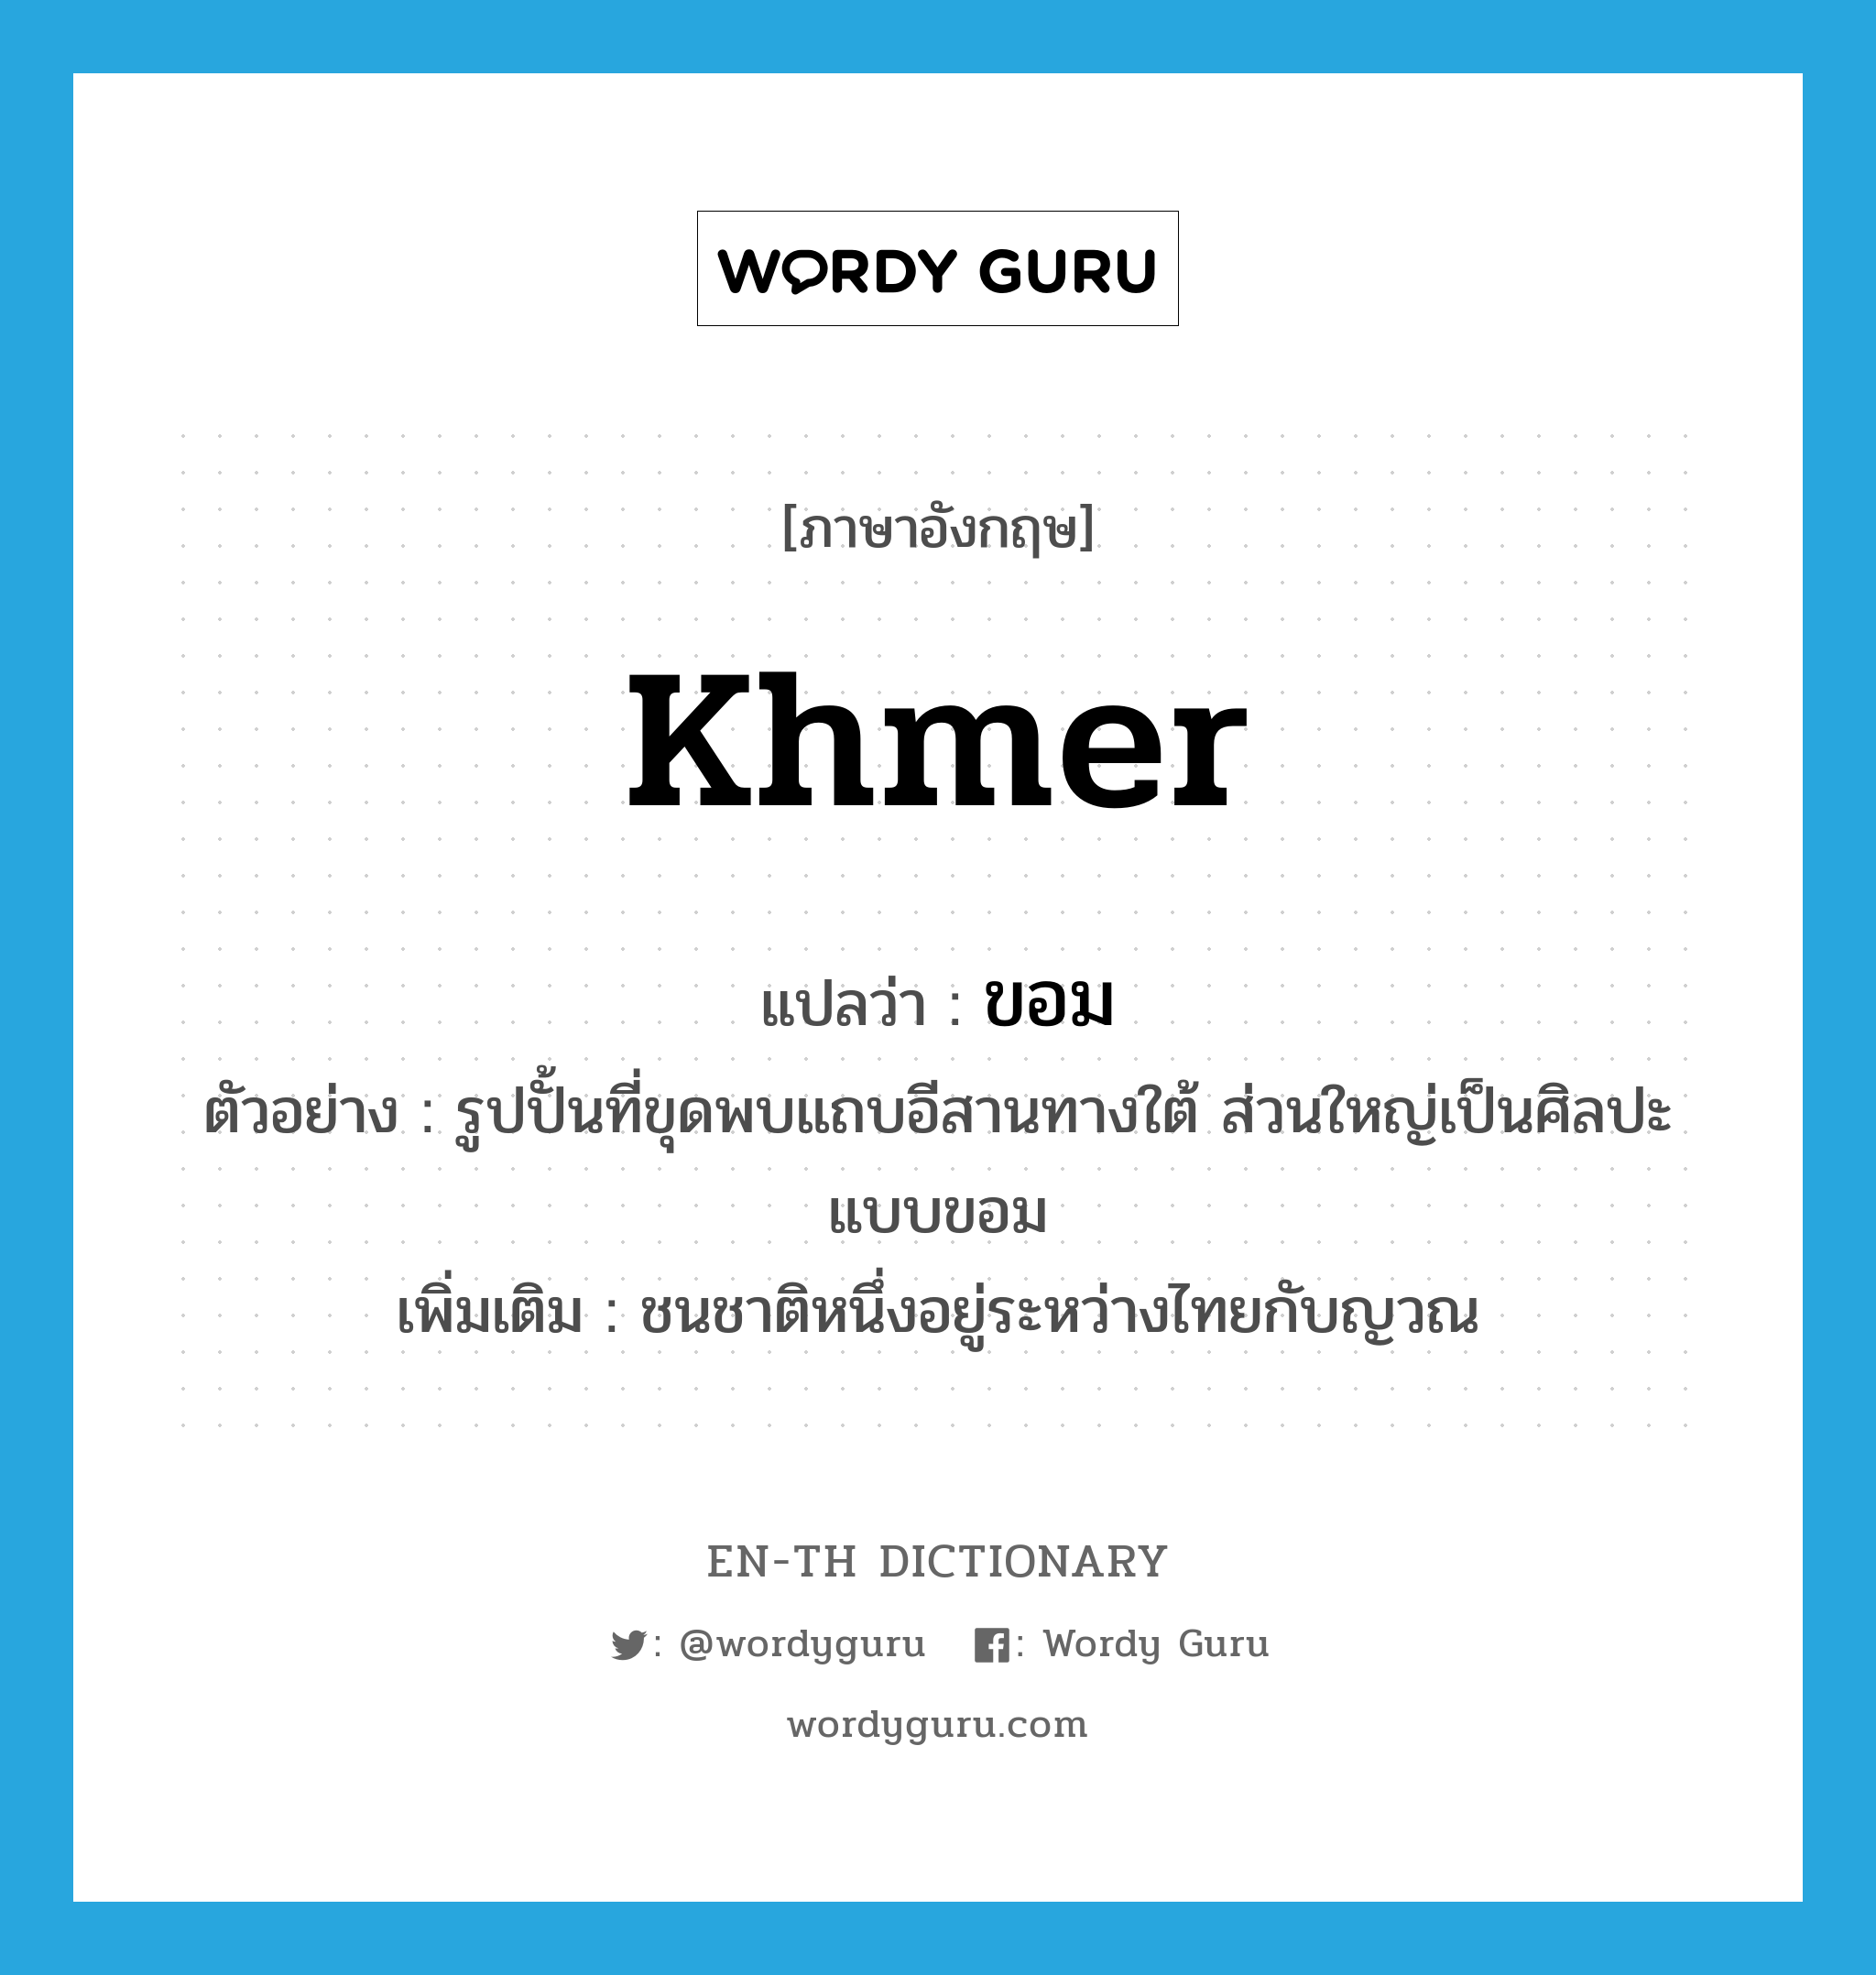 ขอม ภาษาอังกฤษ?, คำศัพท์ภาษาอังกฤษ ขอม แปลว่า Khmer ประเภท N ตัวอย่าง รูปปั้นที่ขุดพบแถบอีสานทางใต้ ส่วนใหญ่เป็นศิลปะแบบขอม เพิ่มเติม ชนชาติหนึ่งอยู่ระหว่างไทยกับญวณ หมวด N